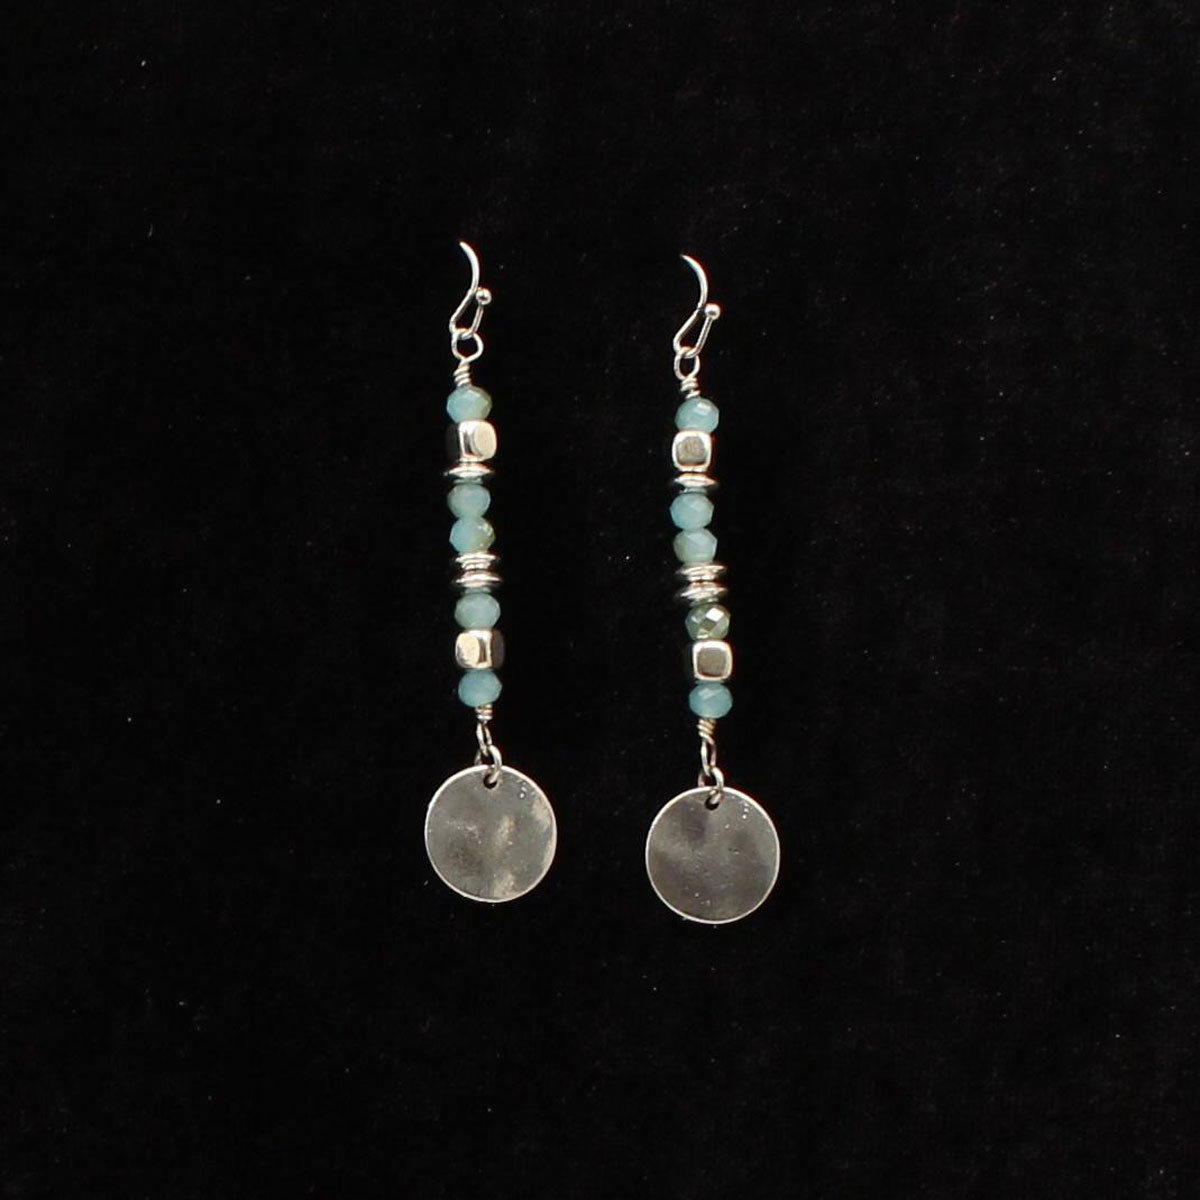 De451sbbl Antique Silver Blue & Silver Alternating Earring